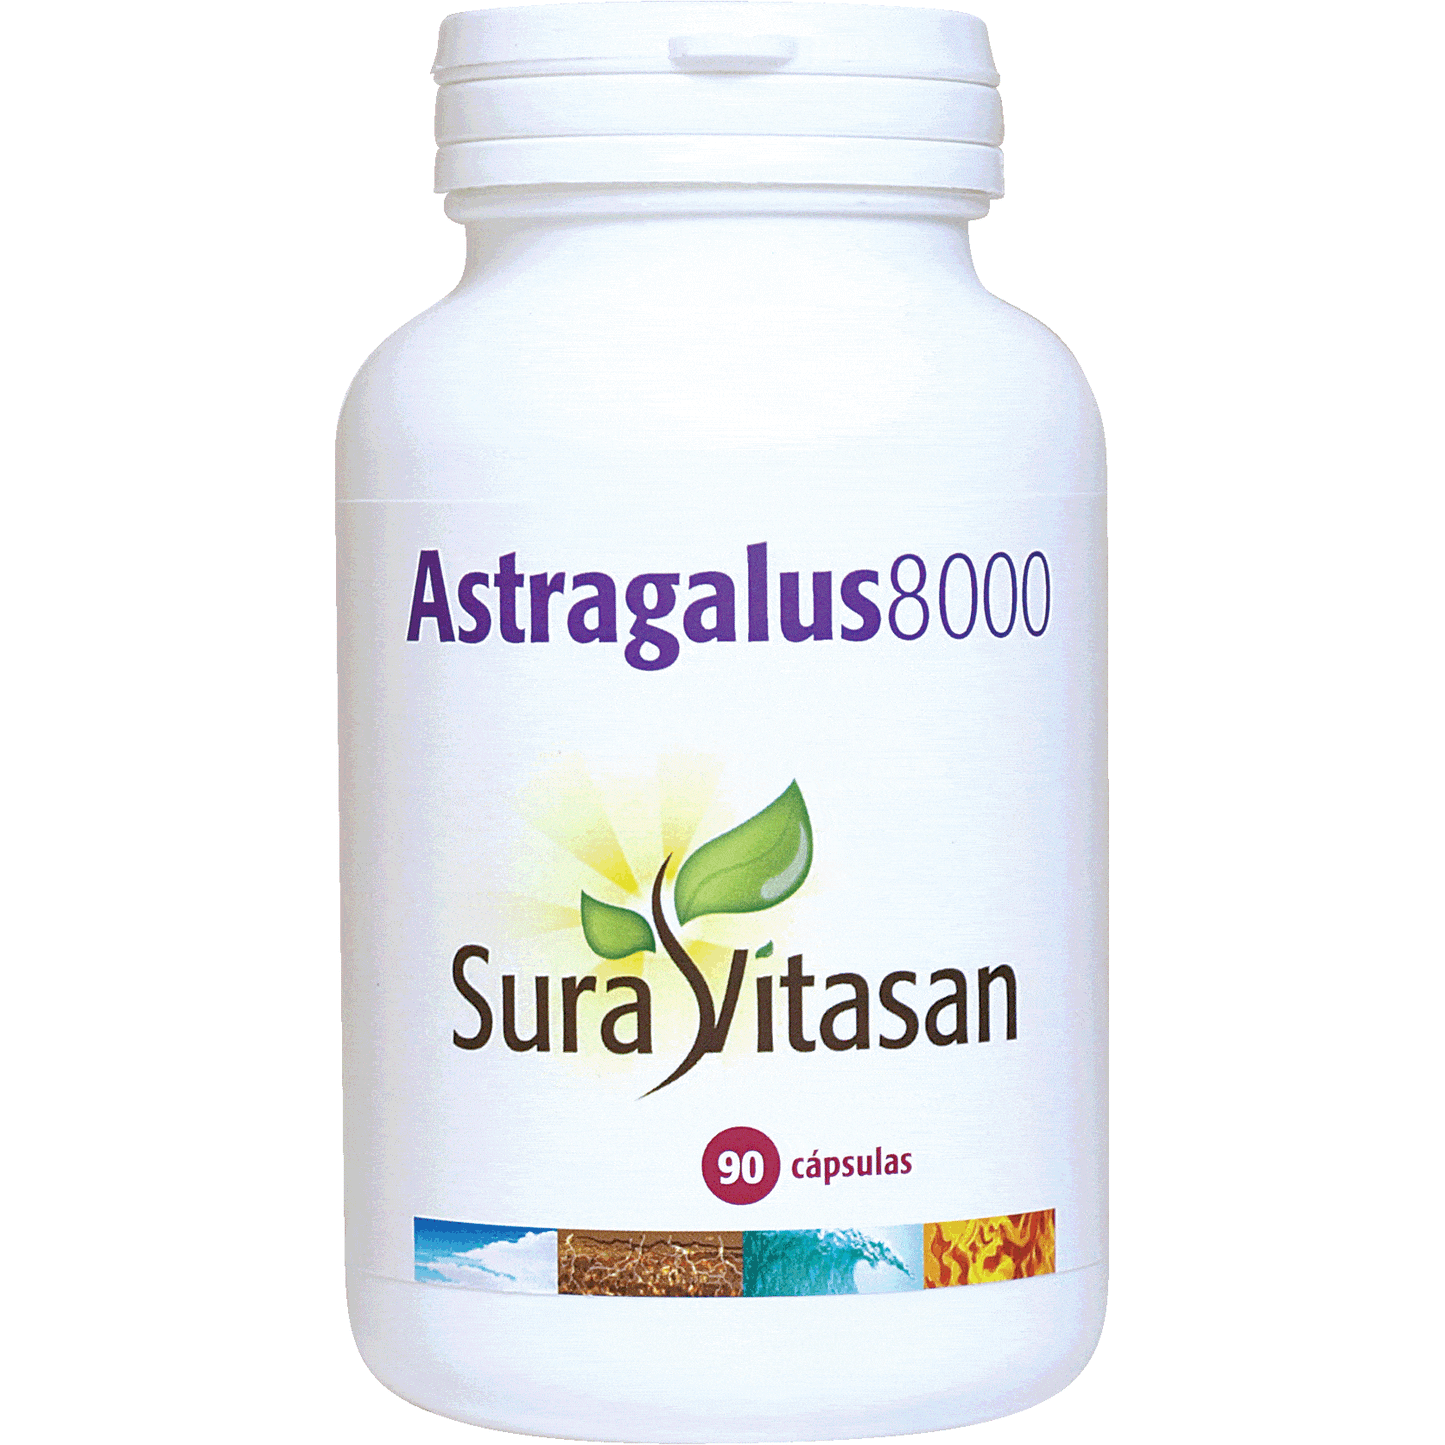 Astragalus 8000 Capsulas | Sura Vitasan - Dietetica Ferrer